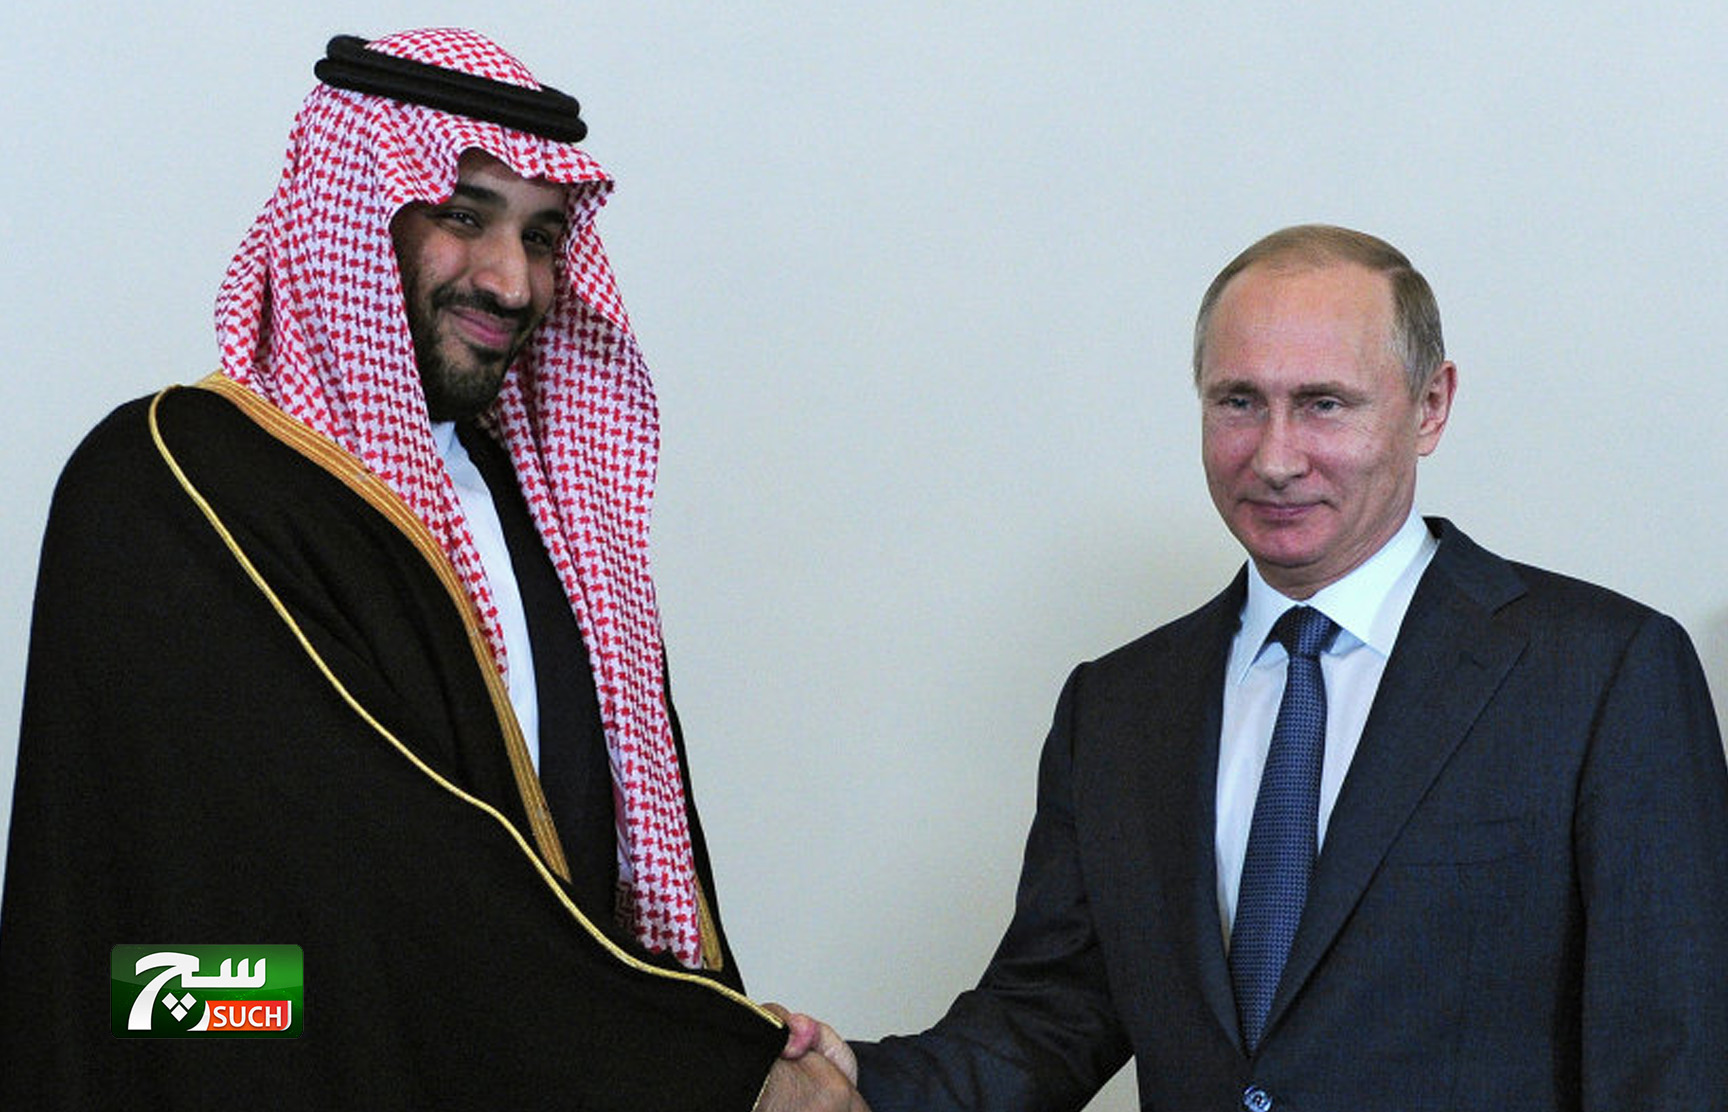 صندوق الاستثمار الروسي يشارك في زيارة الرئيس بوتين إلى السعودية